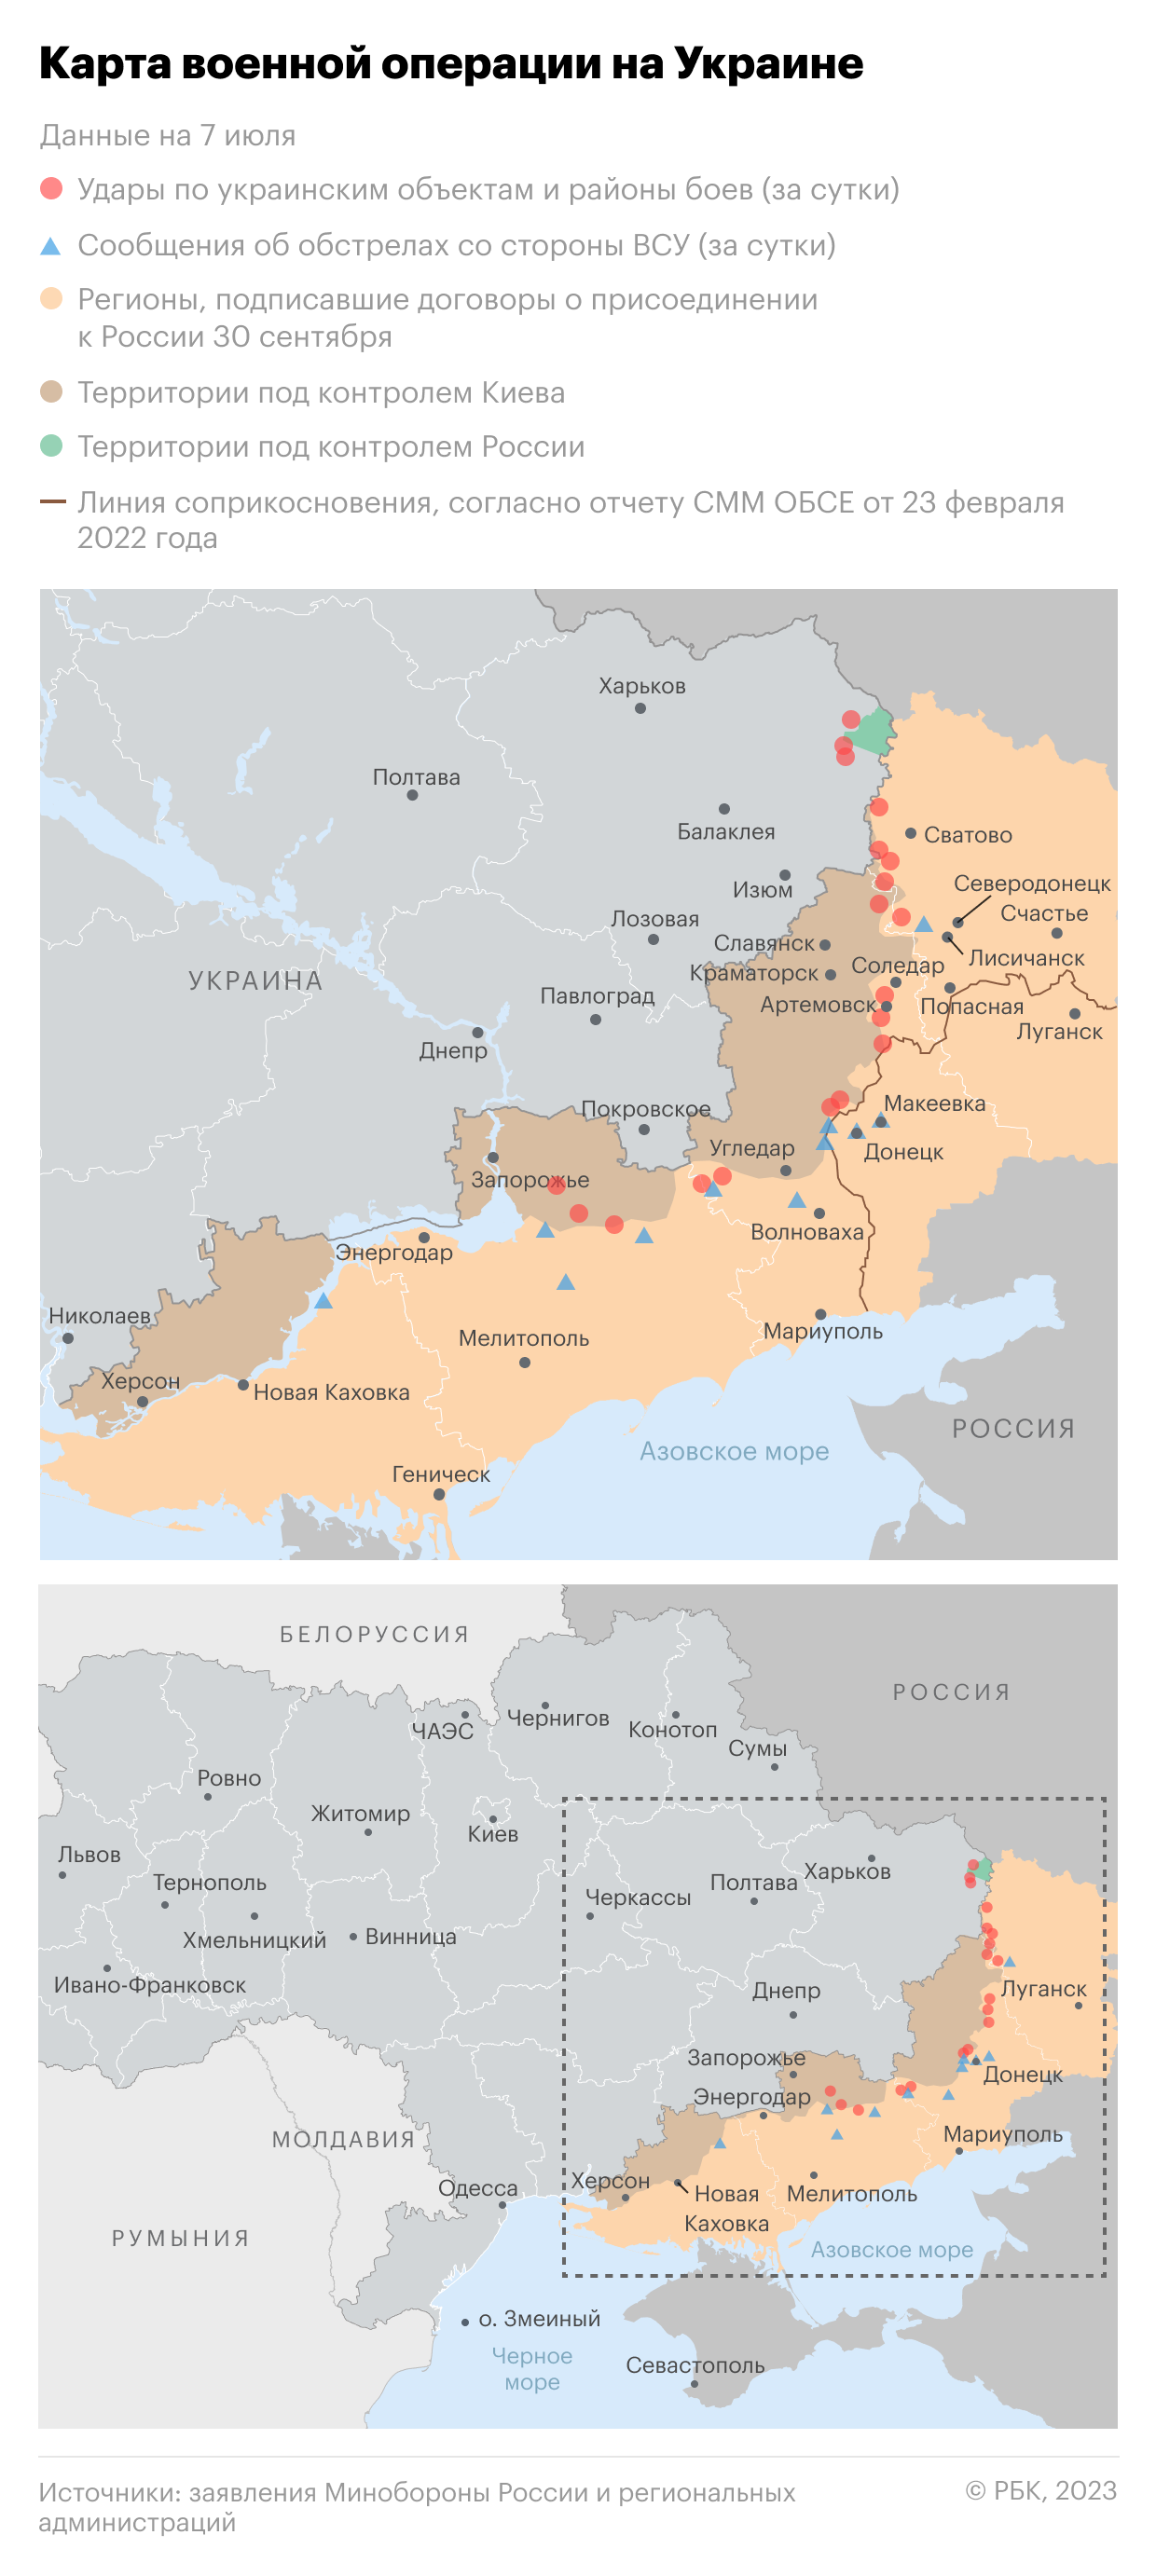 Военная операция на Украине. Карта на 7 июля"/>













